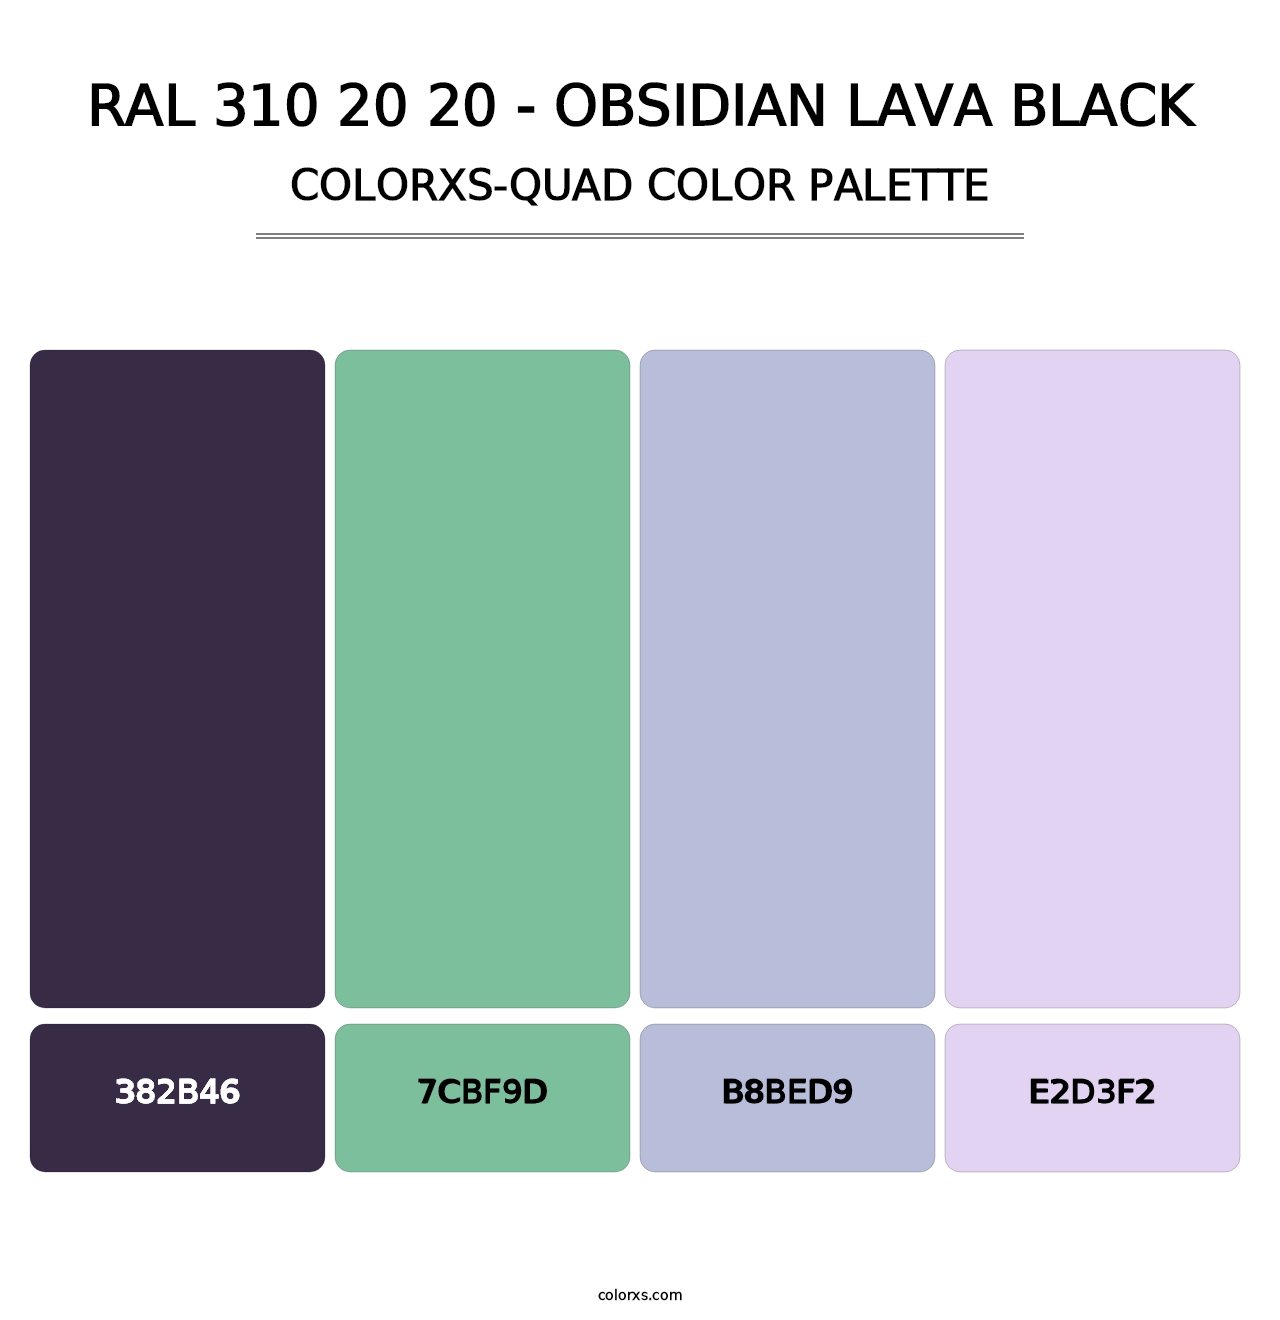 RAL 310 20 20 - Obsidian Lava Black - Colorxs Quad Palette